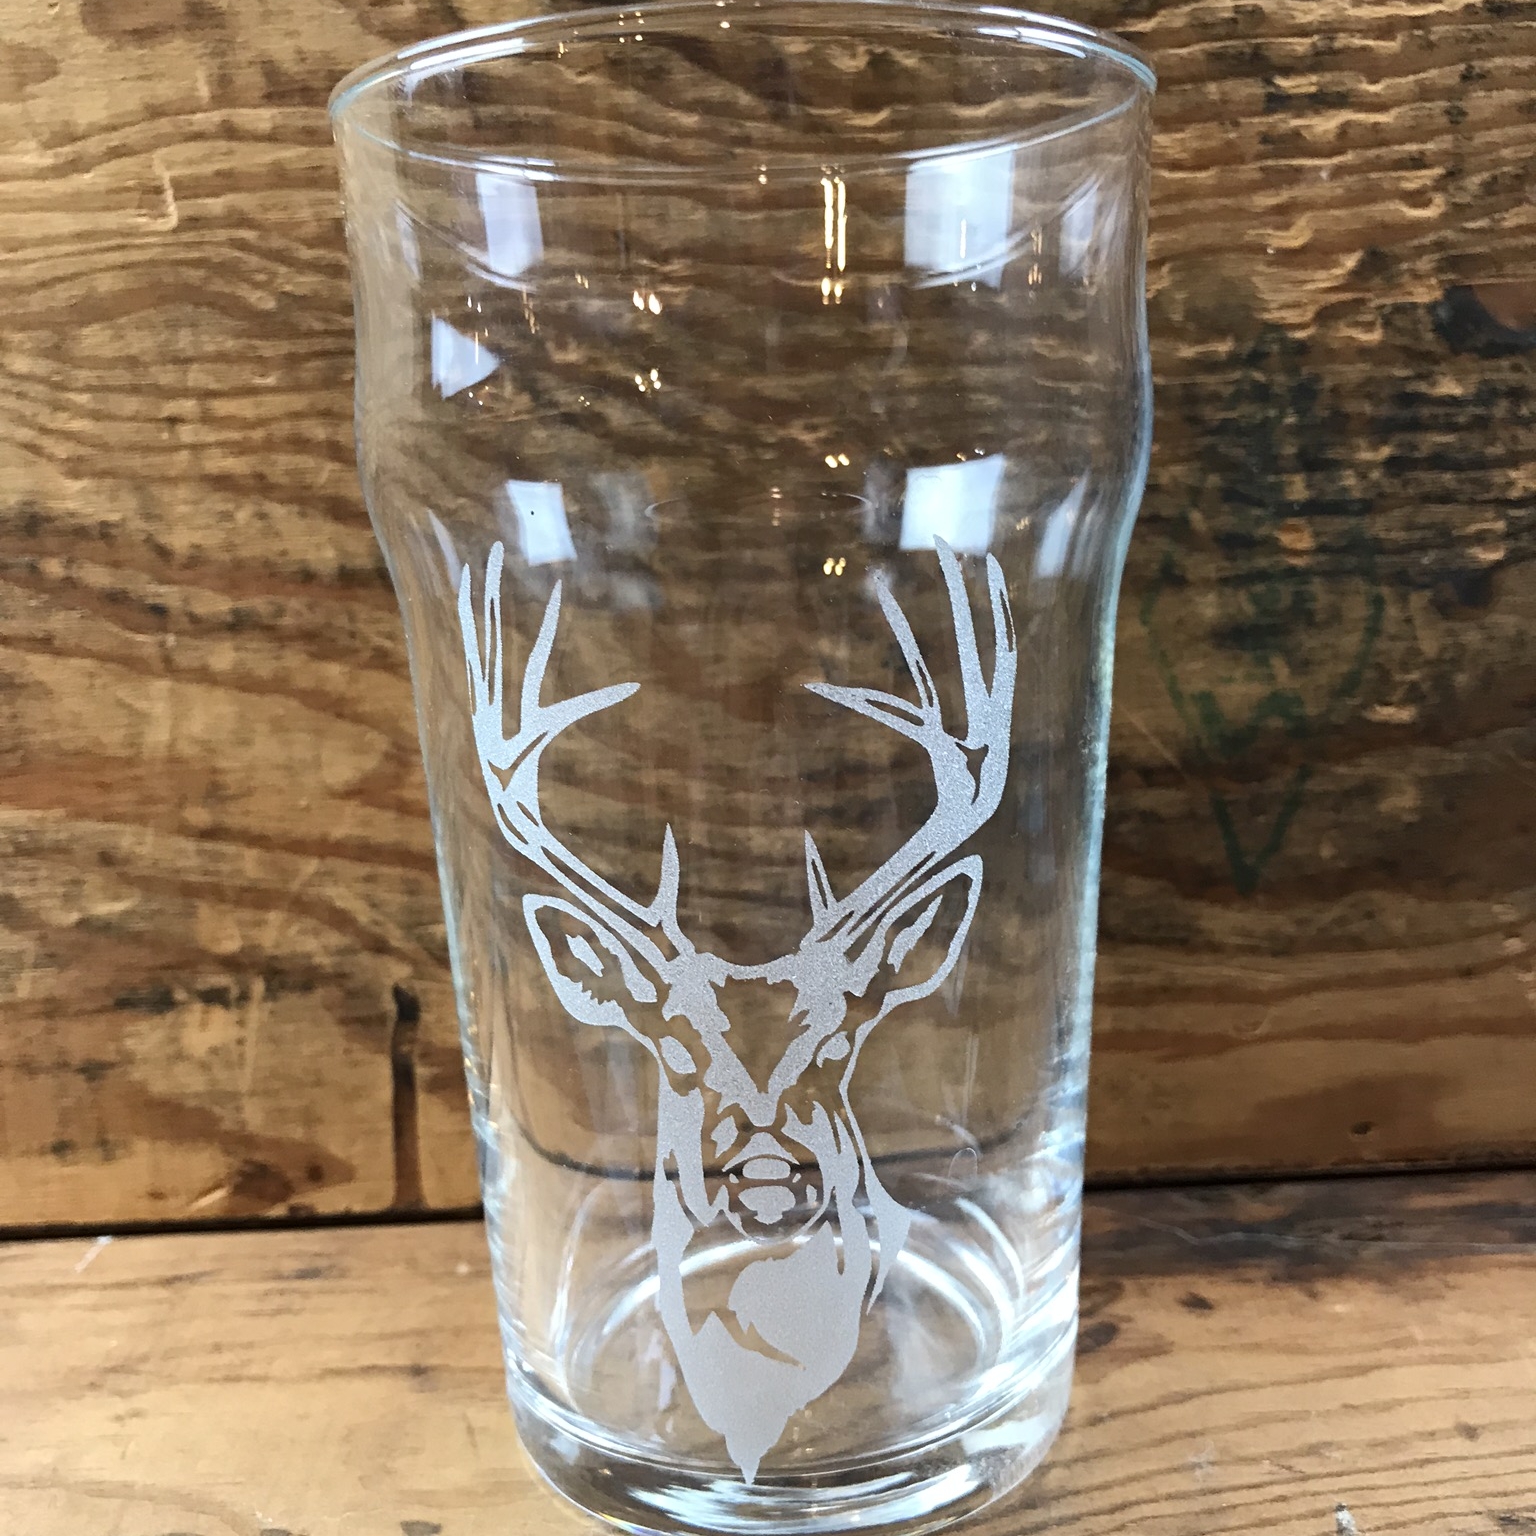 Deer and Beer Tumbler